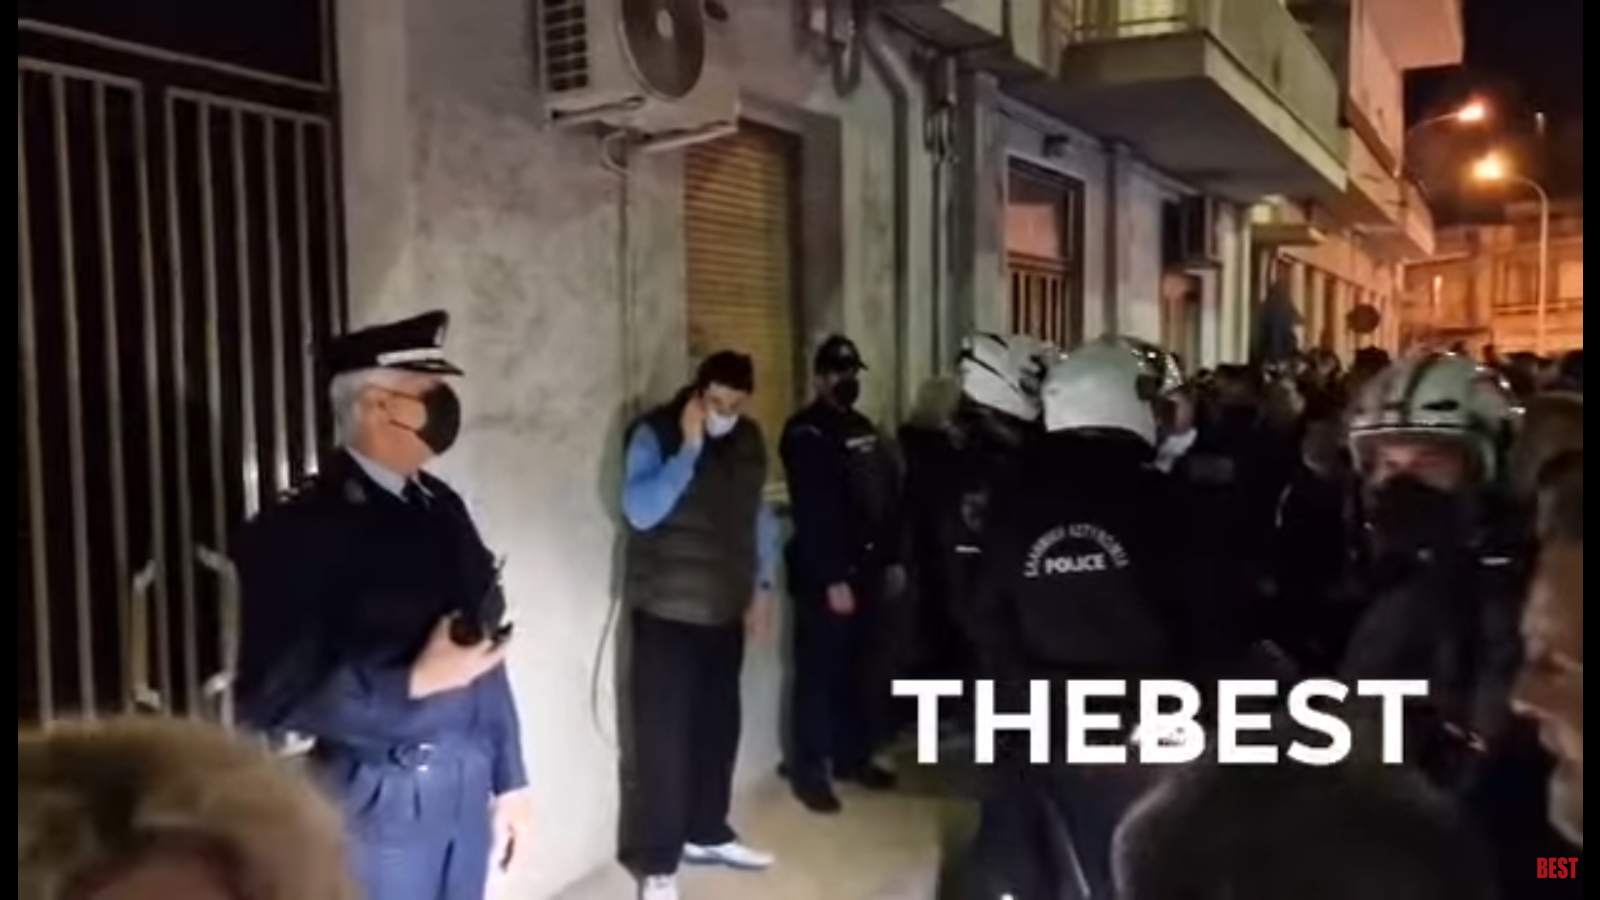 Πάτρα: Αστυνομική δύναμη έξω από το σπίτι της Ρούλας Πισπιρίγκου – «Να μπούμε», «Κρεμάστε την» φωνάζει ο συγκεντρωμένος κόσμος